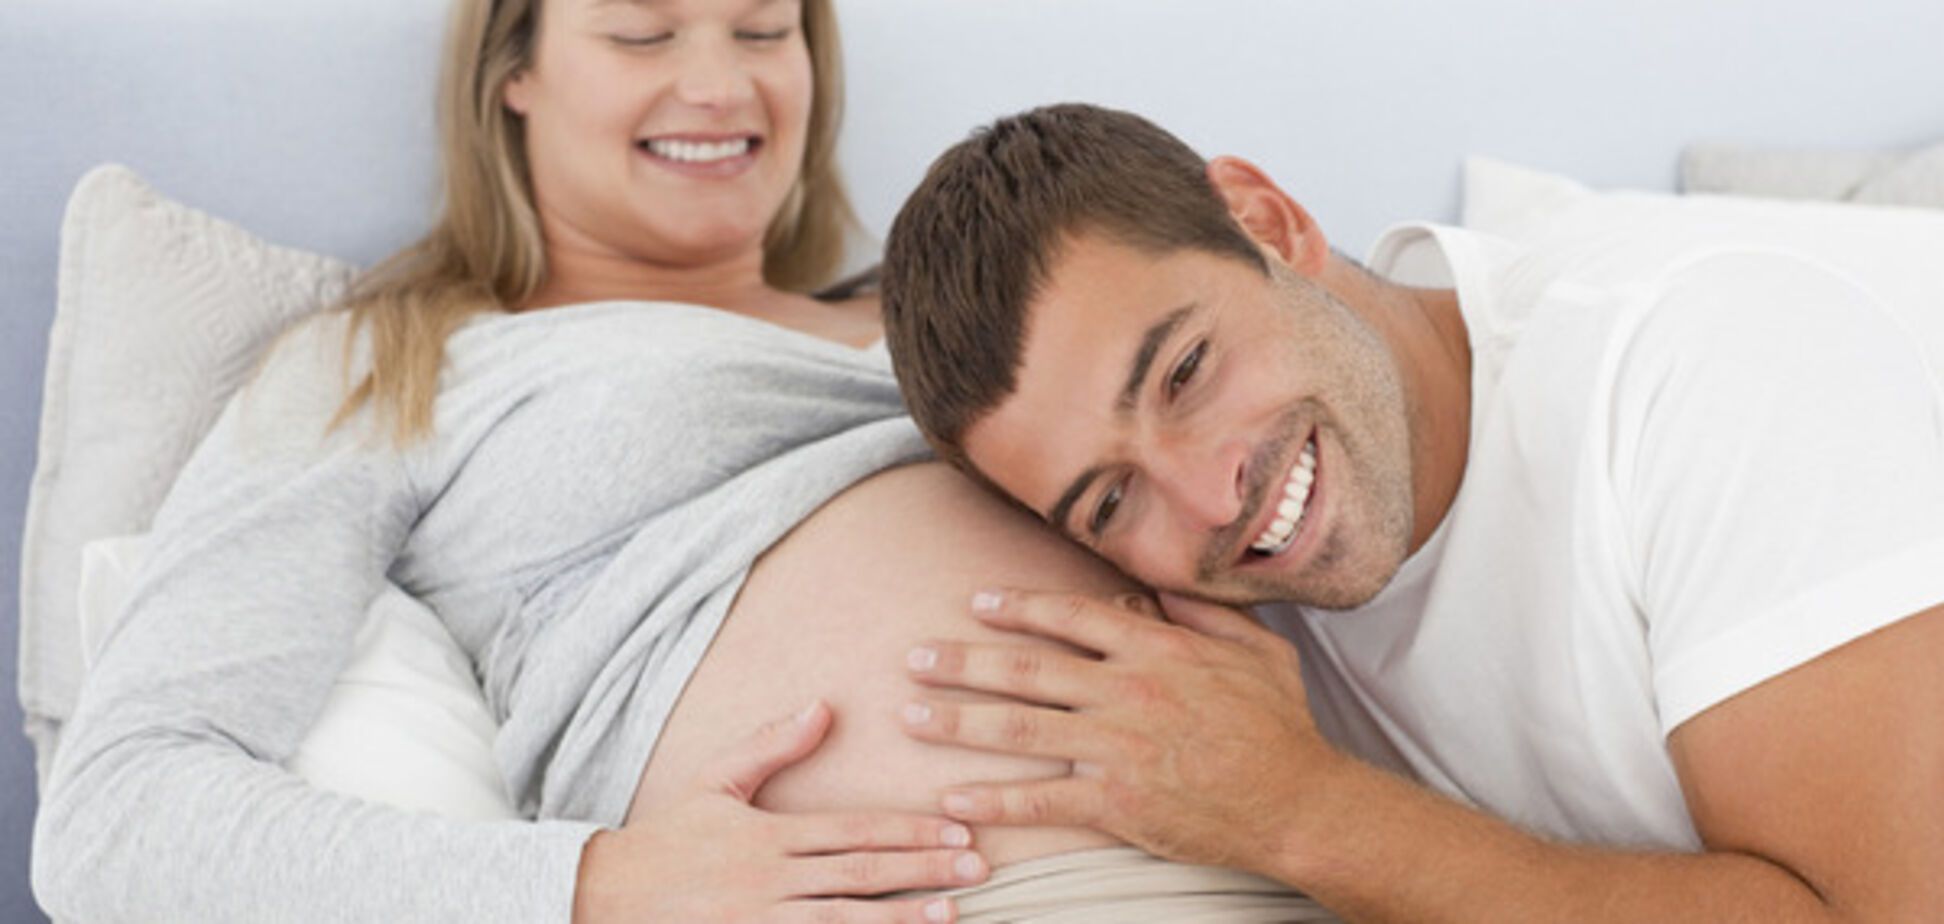 Дети узнают прикосновение мамы еще утробе: ученые провели интересное исследование